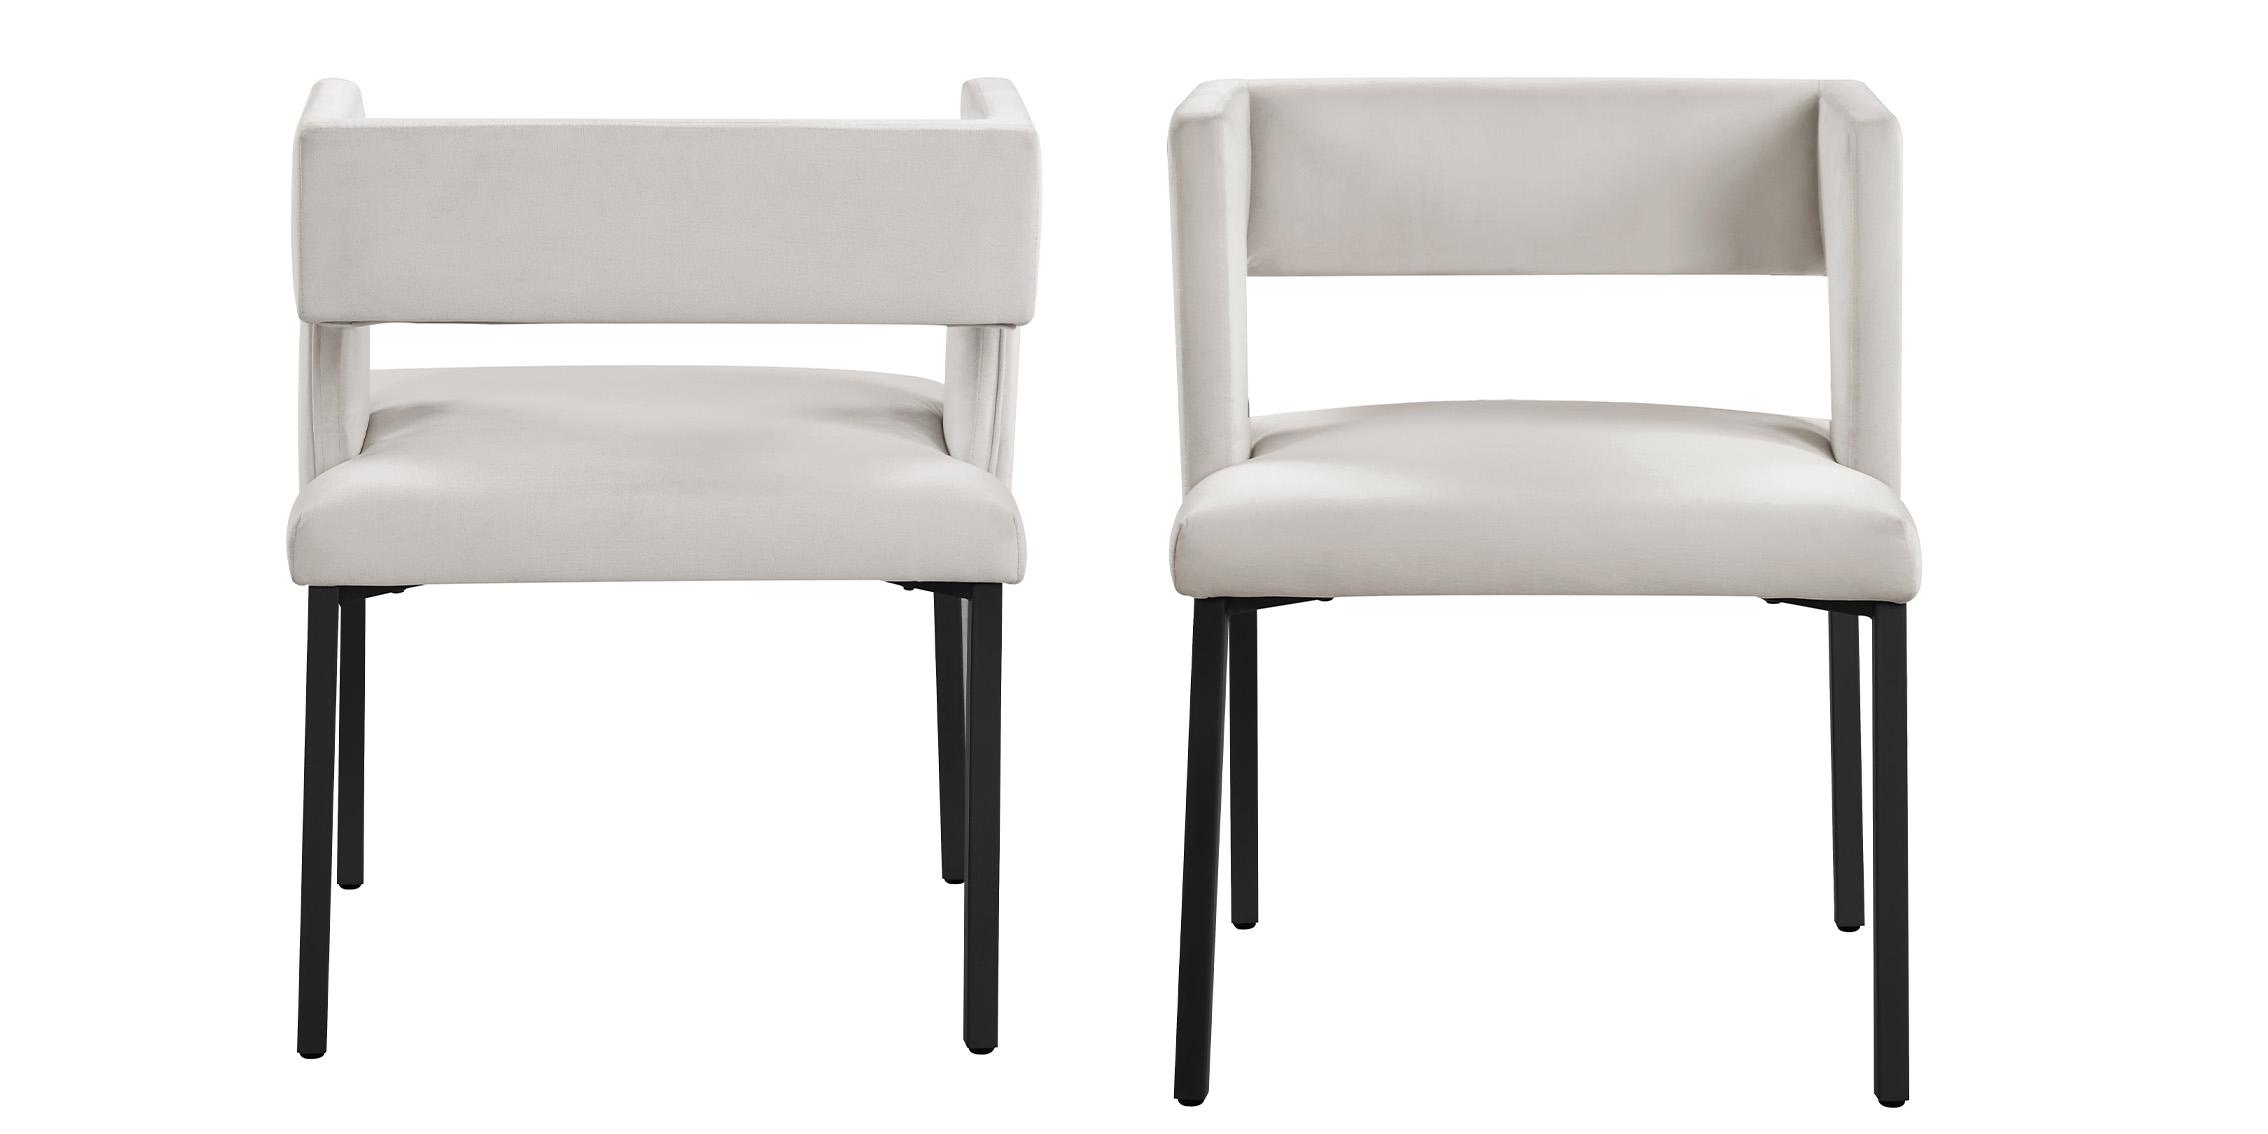 

    
Meridian Furniture CALEB 968Cream-C Dining Chair Set Cream/Black 968Cream-C
